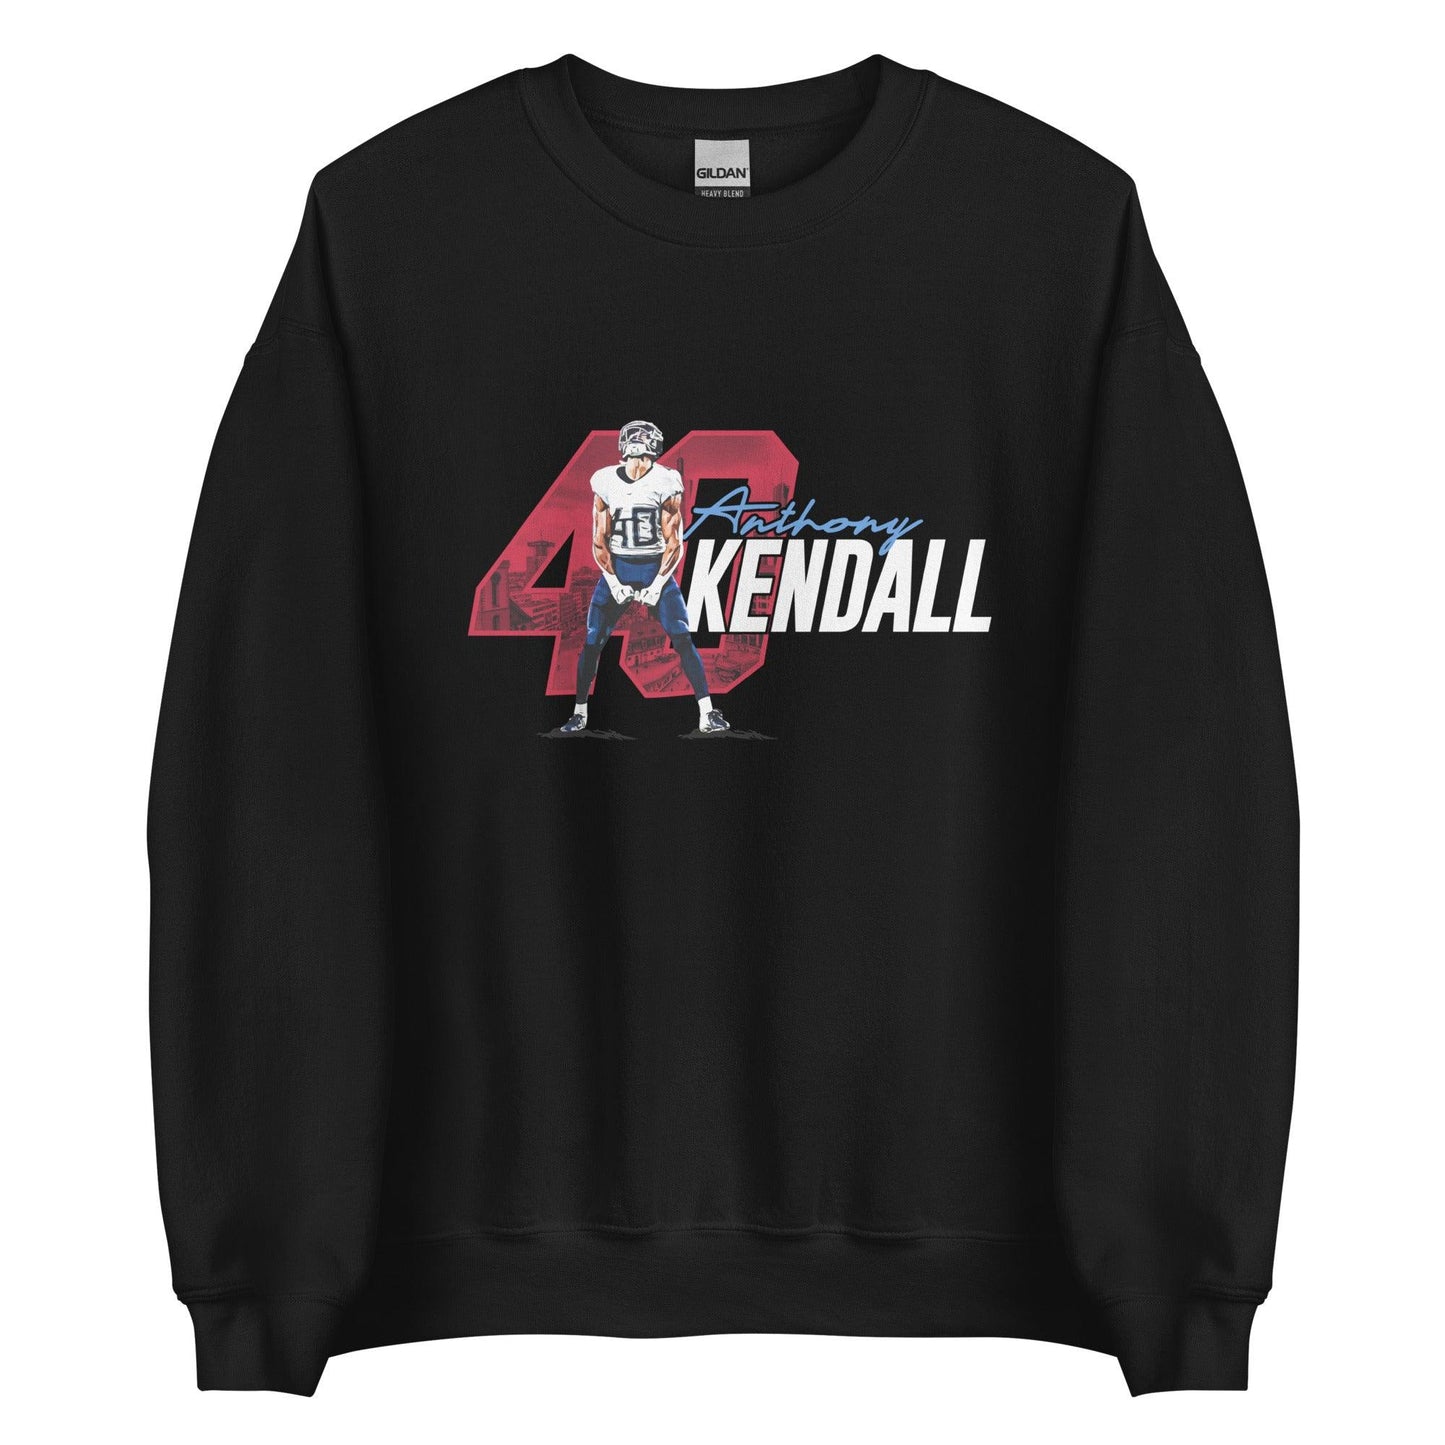 Anthony Kendall "Gameday" Sweatshirt - Fan Arch